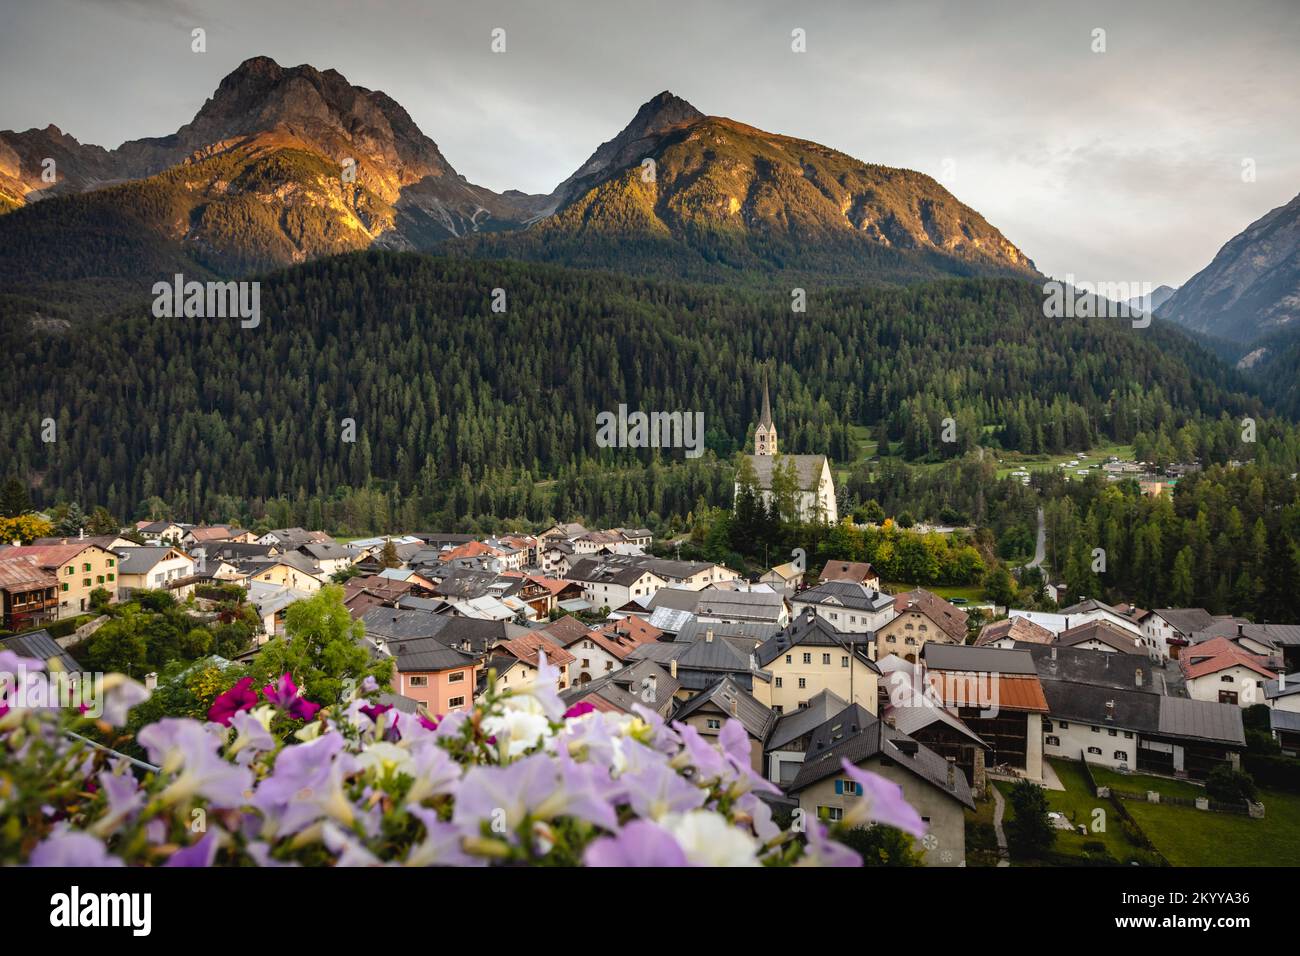 Paesaggio idilliaco del villaggio di Scuol, Engadina, Alpi svizzere, Svizzera Foto Stock